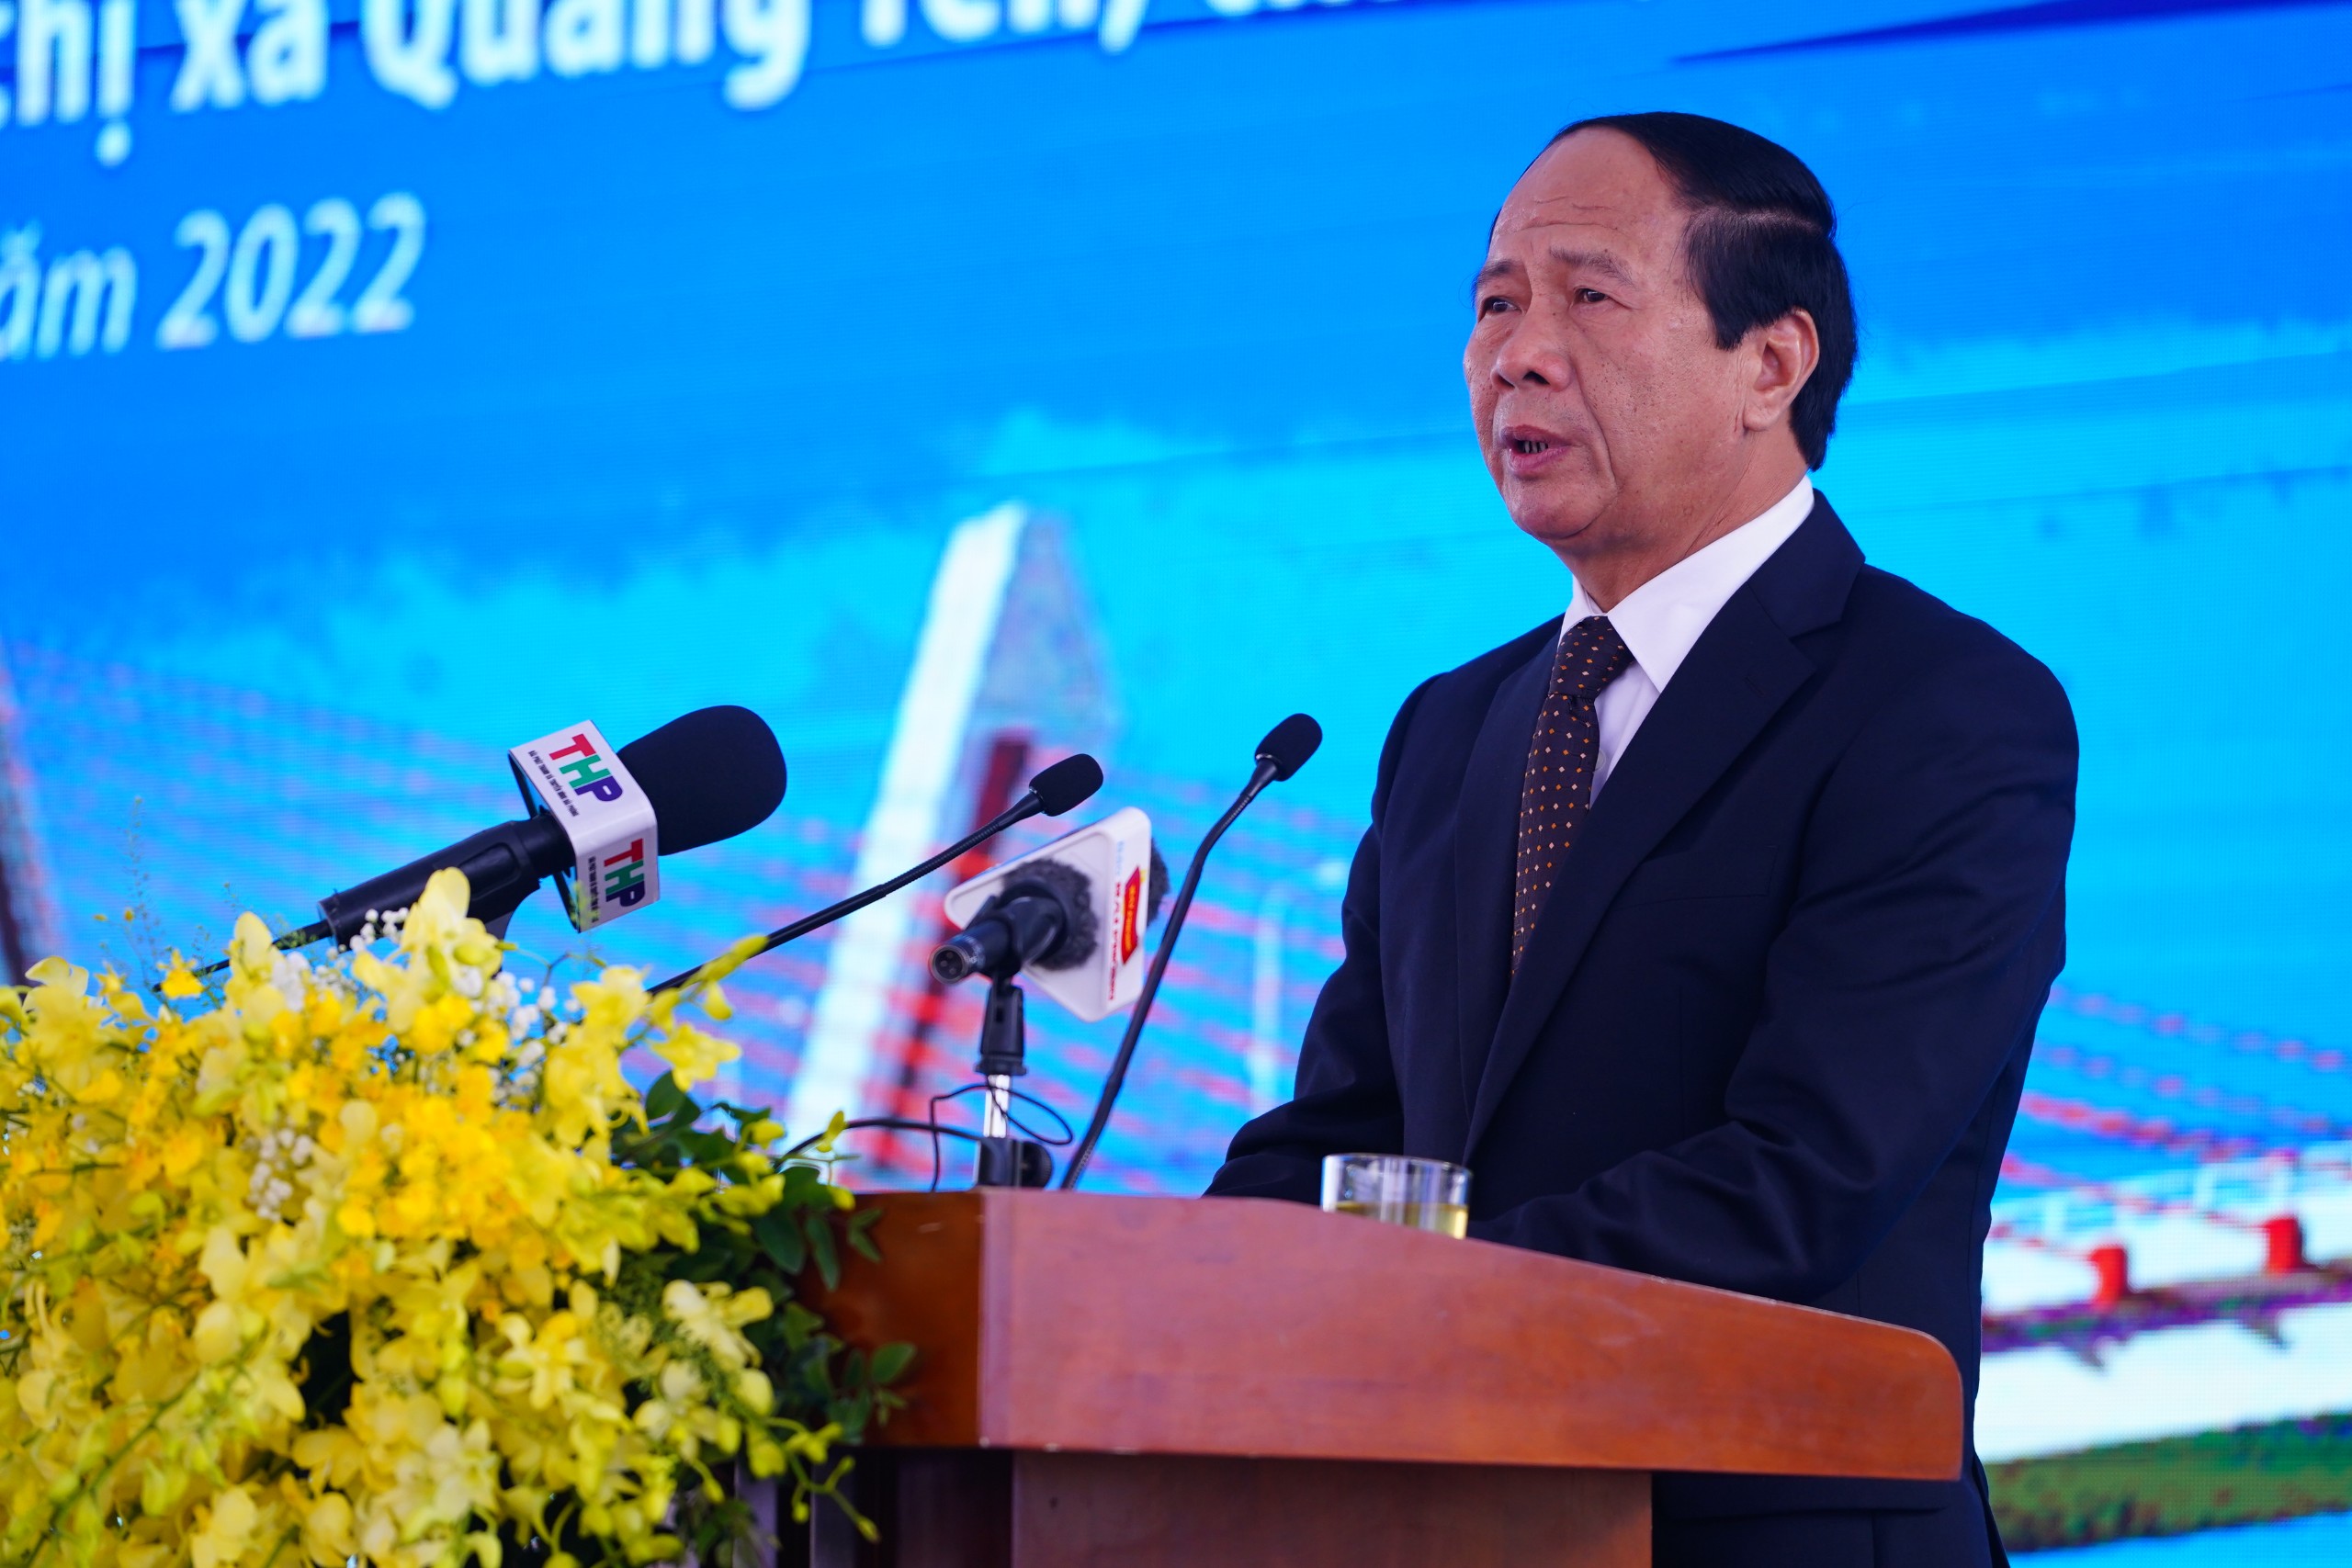 Phó Thủ tướng Chính phủ Lê Văn Thành phát biểu chỉ đạo và phát lệnh khởi công Dự án